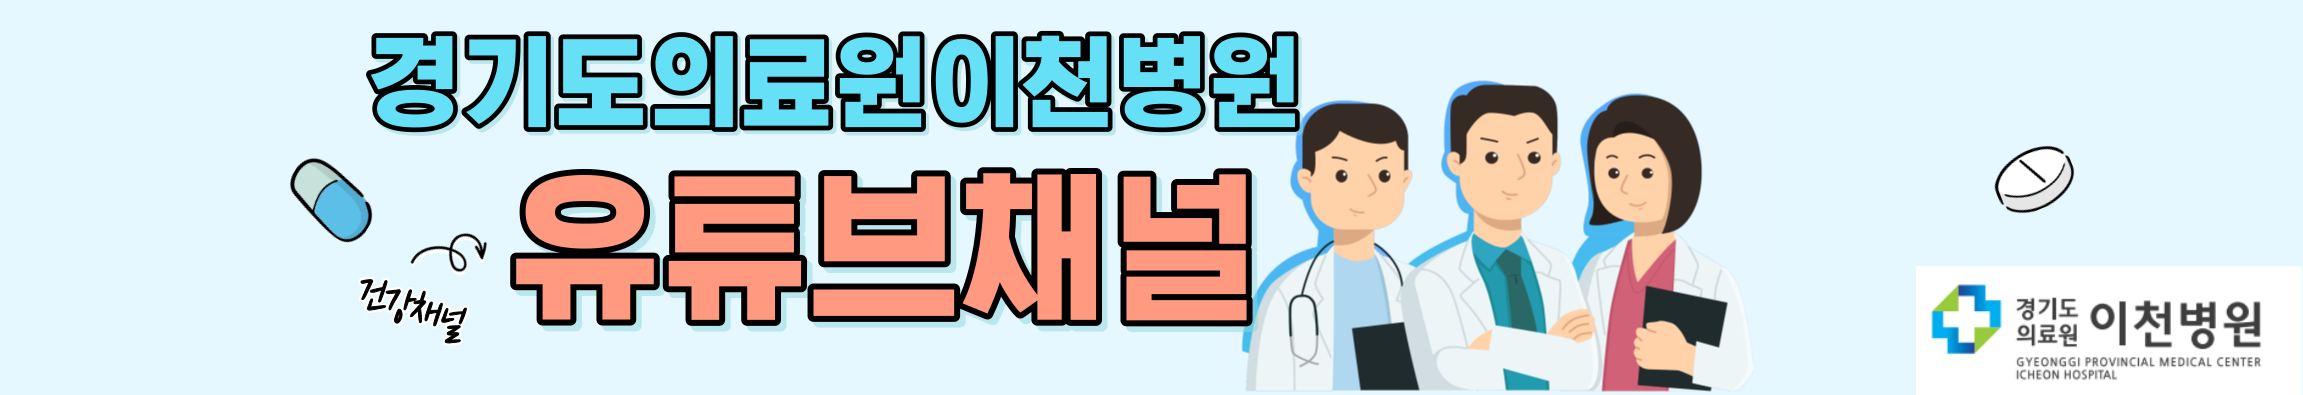 경기도의료원이천병원 유튜브채널